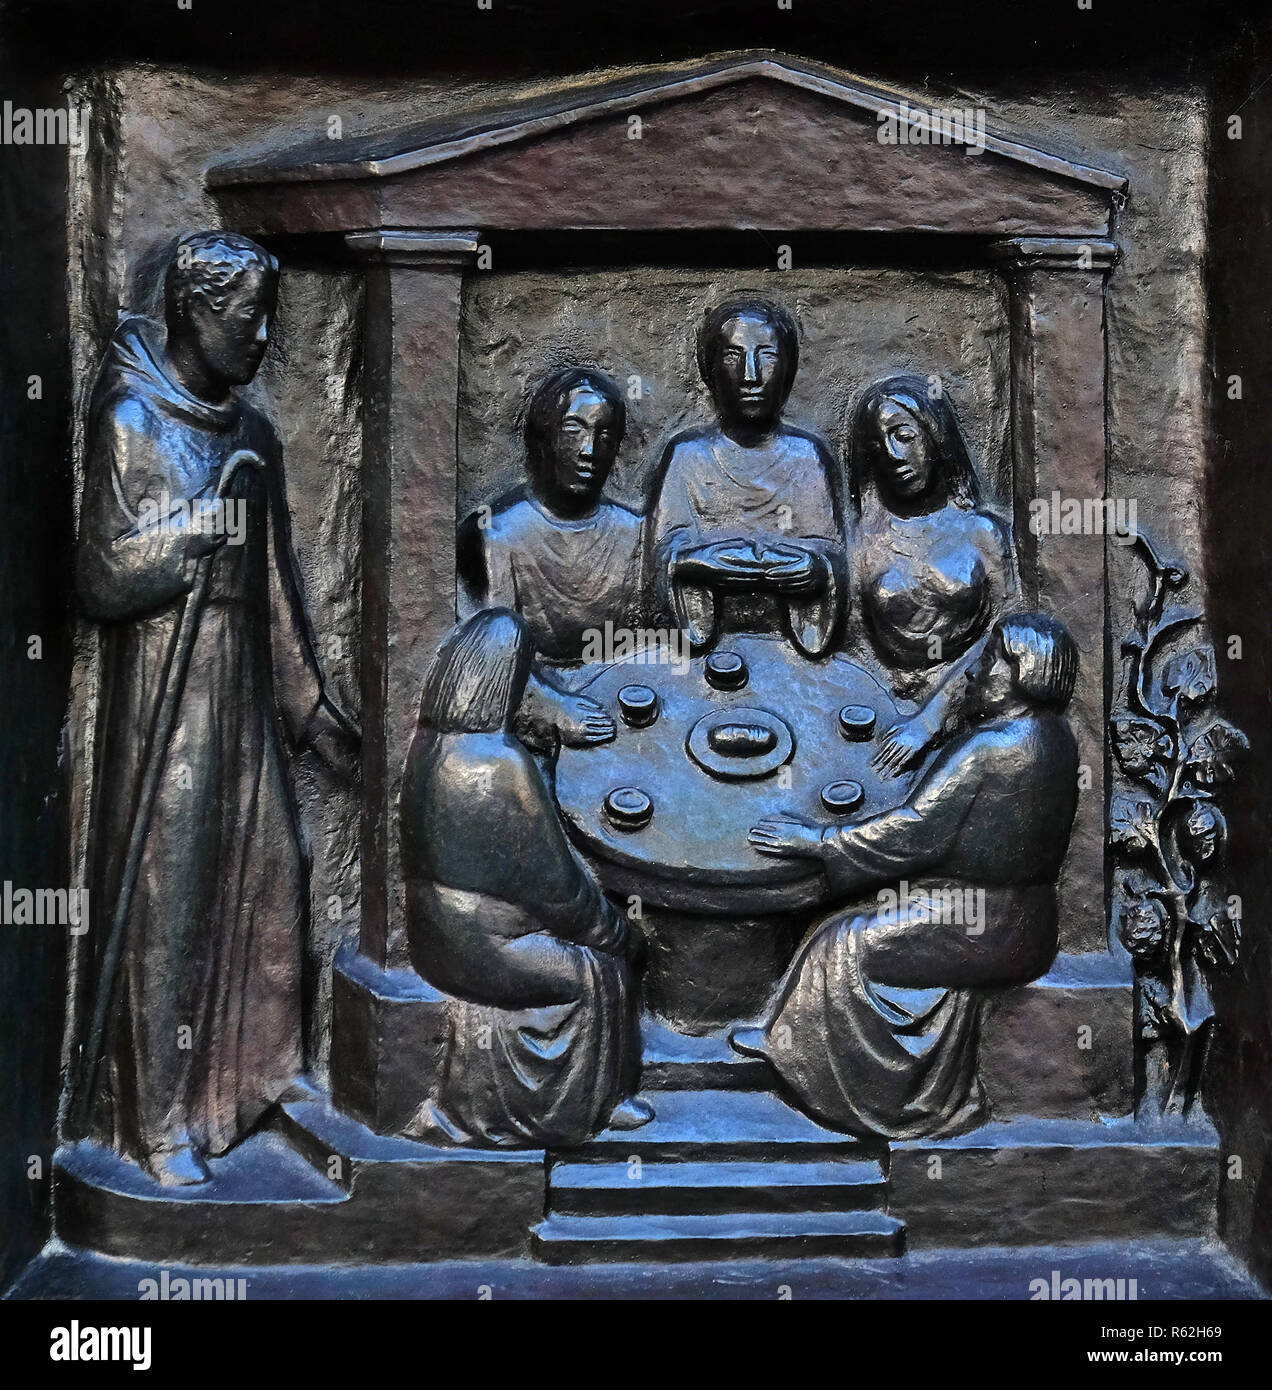 Le repas du Seigneur, de secours sur la porte de l'Grossmunster ('grand minster') Église de Zurich, Suisse Banque D'Images